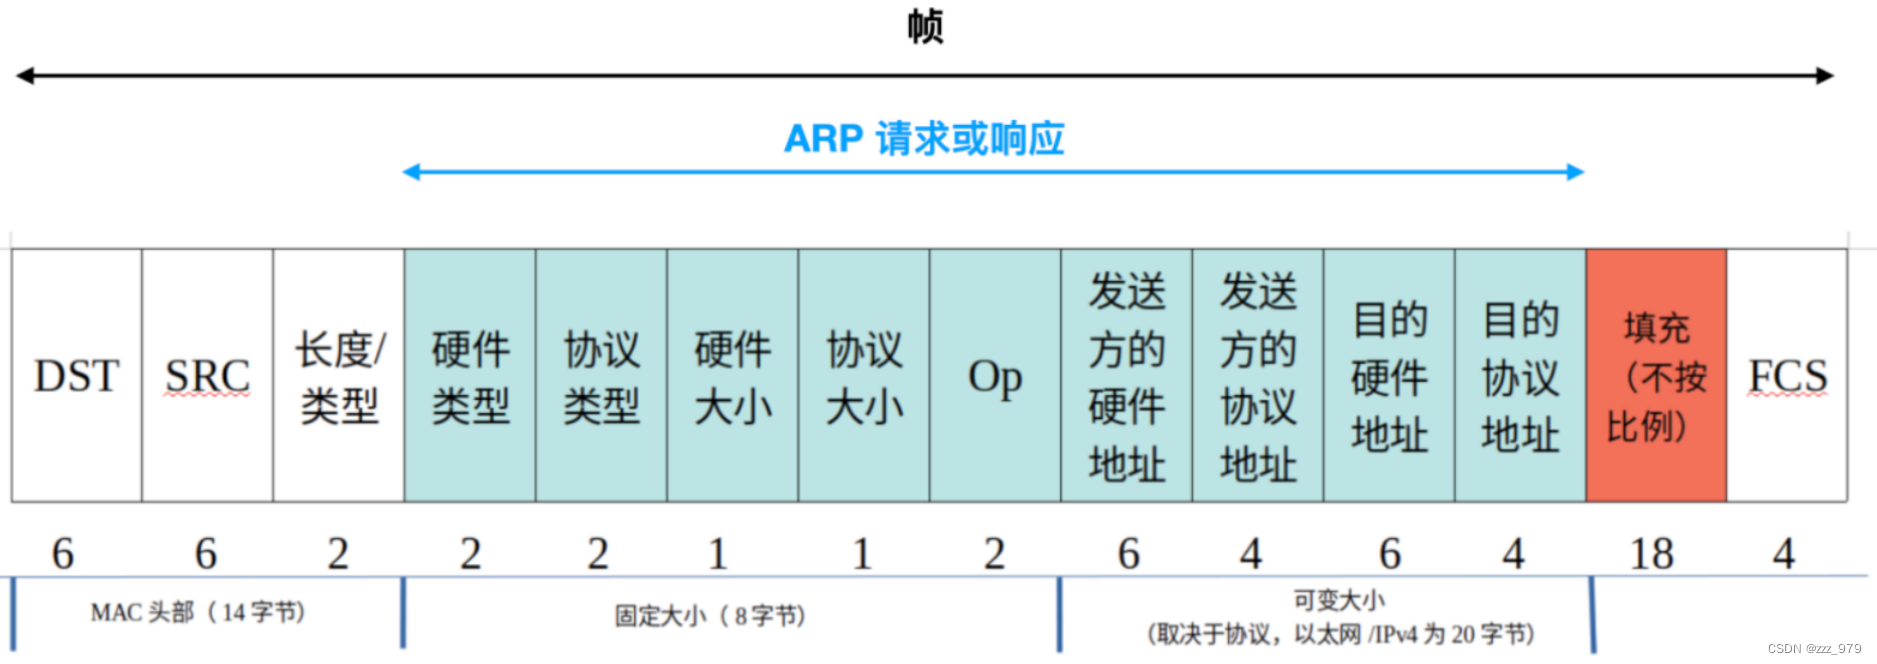 ARP协议（地址解析协议）